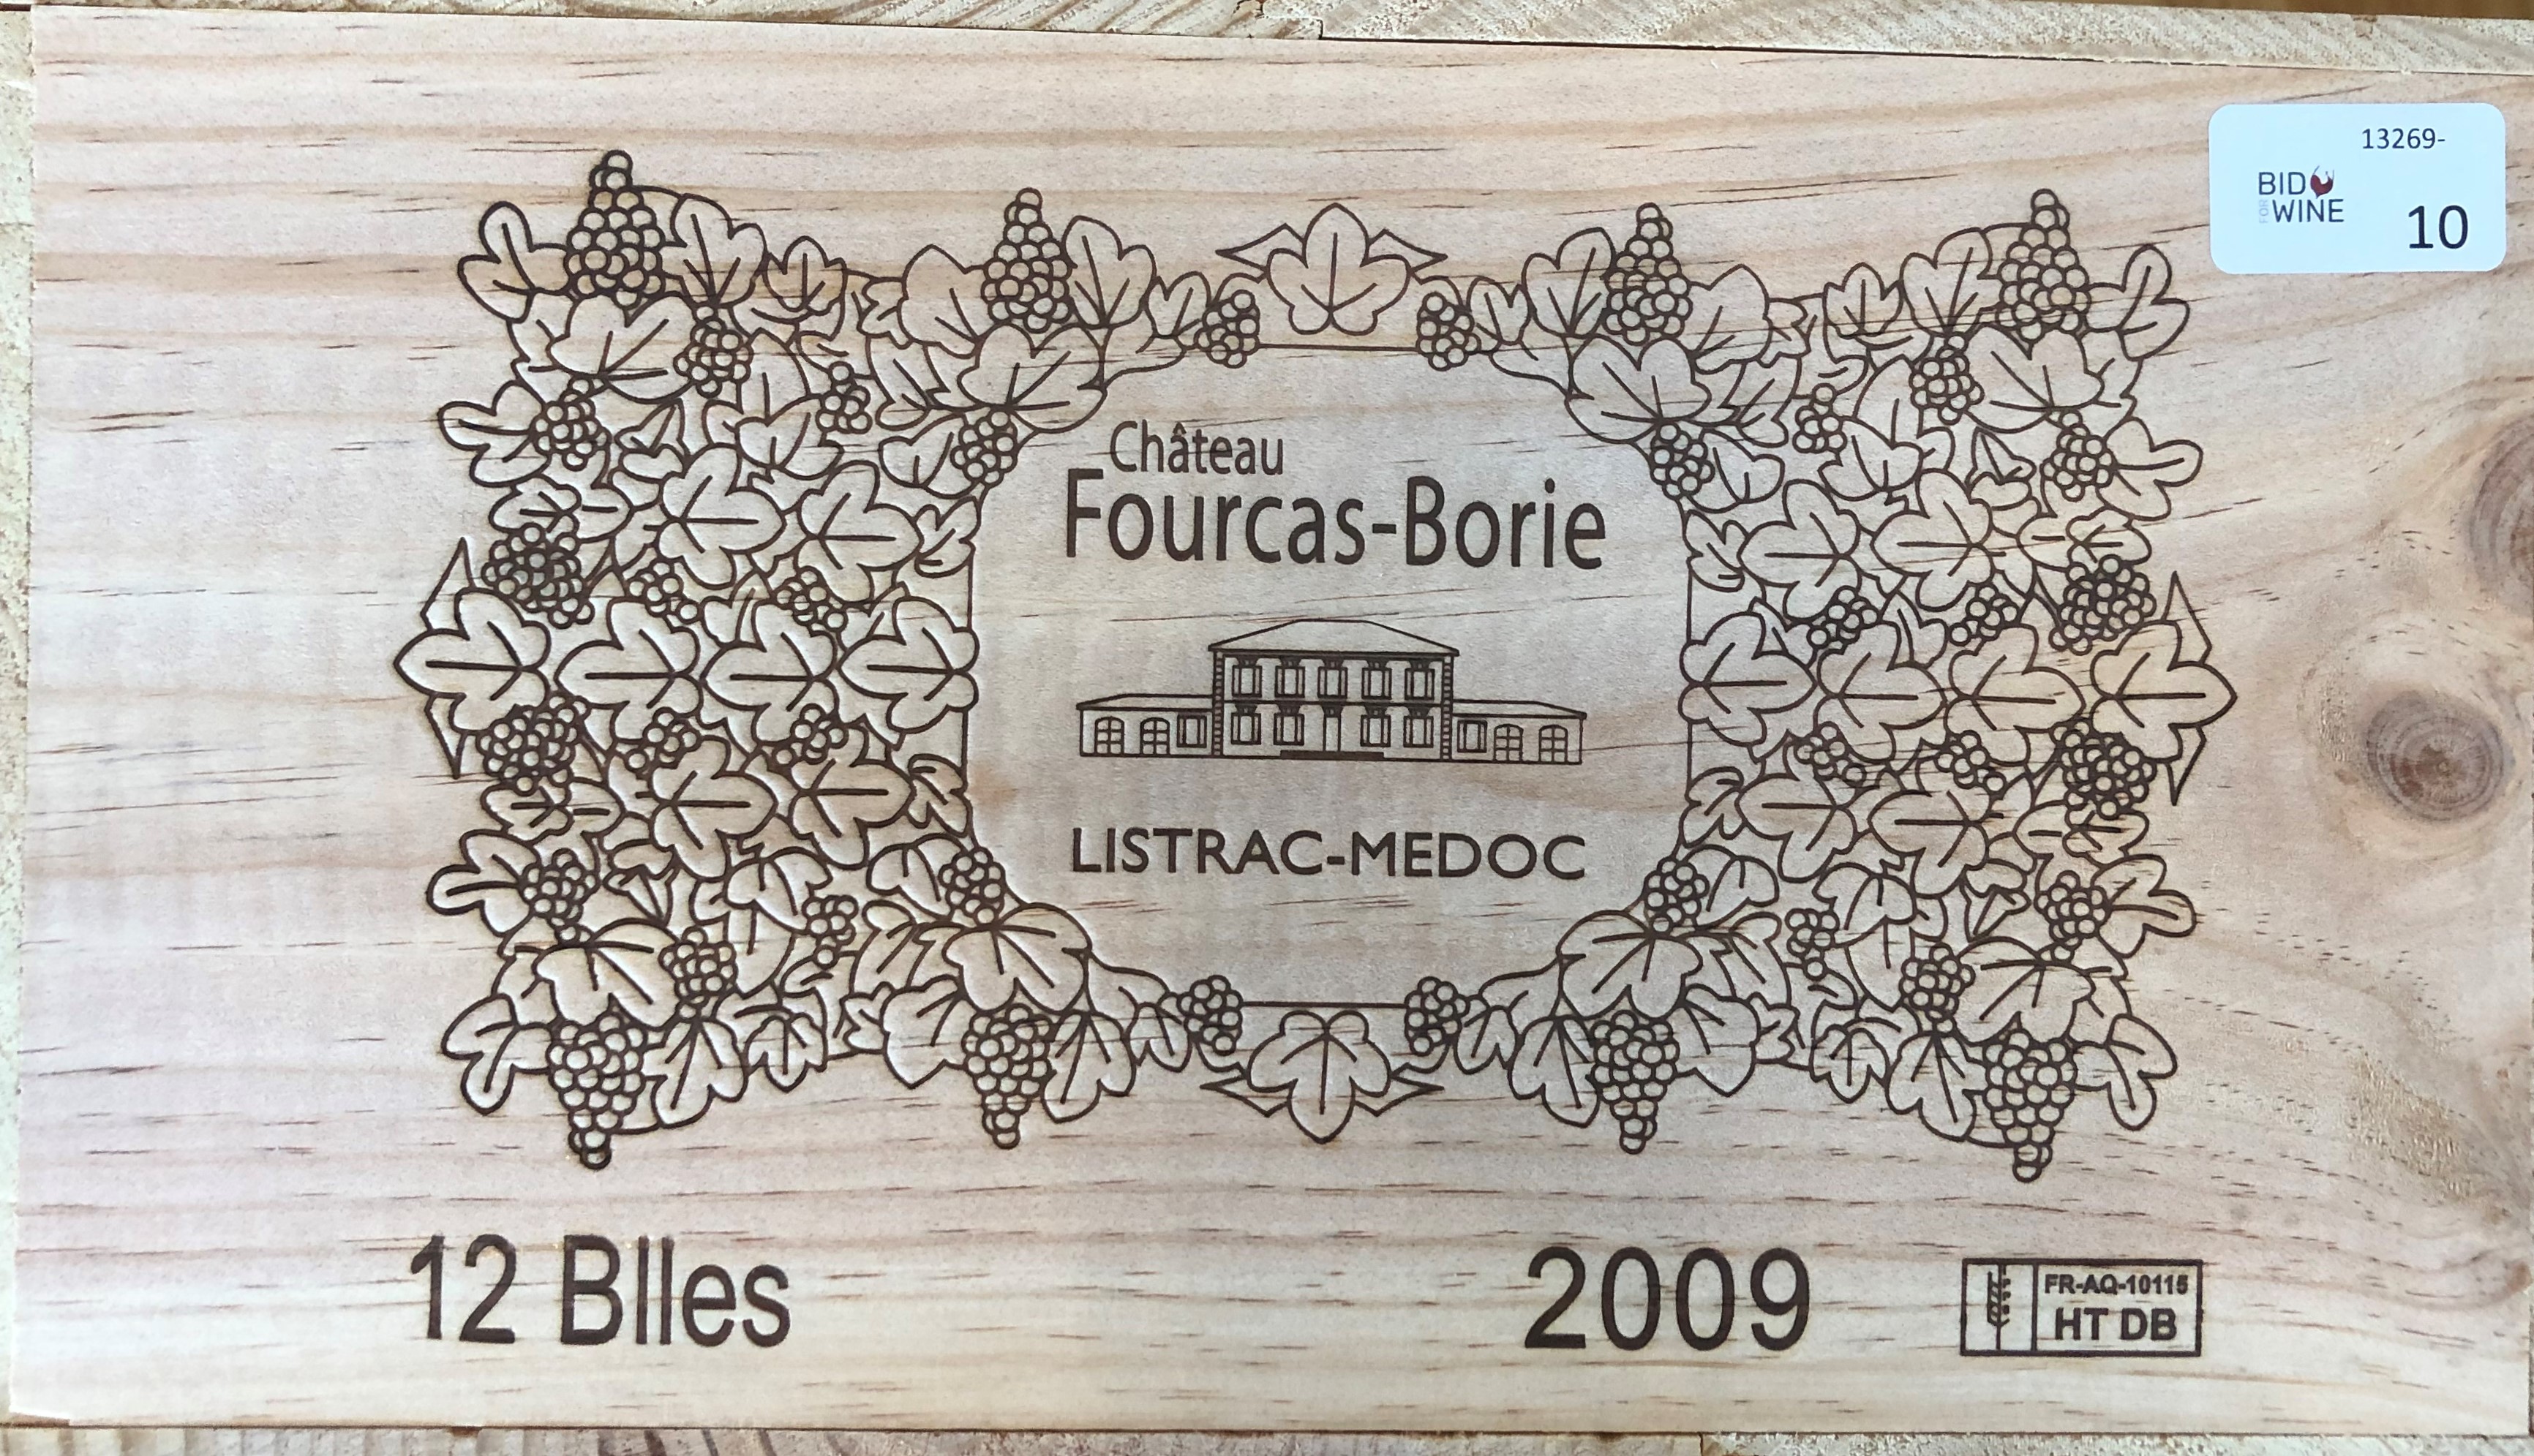 2009 Fourcas Borie Listrac, Bordeaux, France, 12 bottles